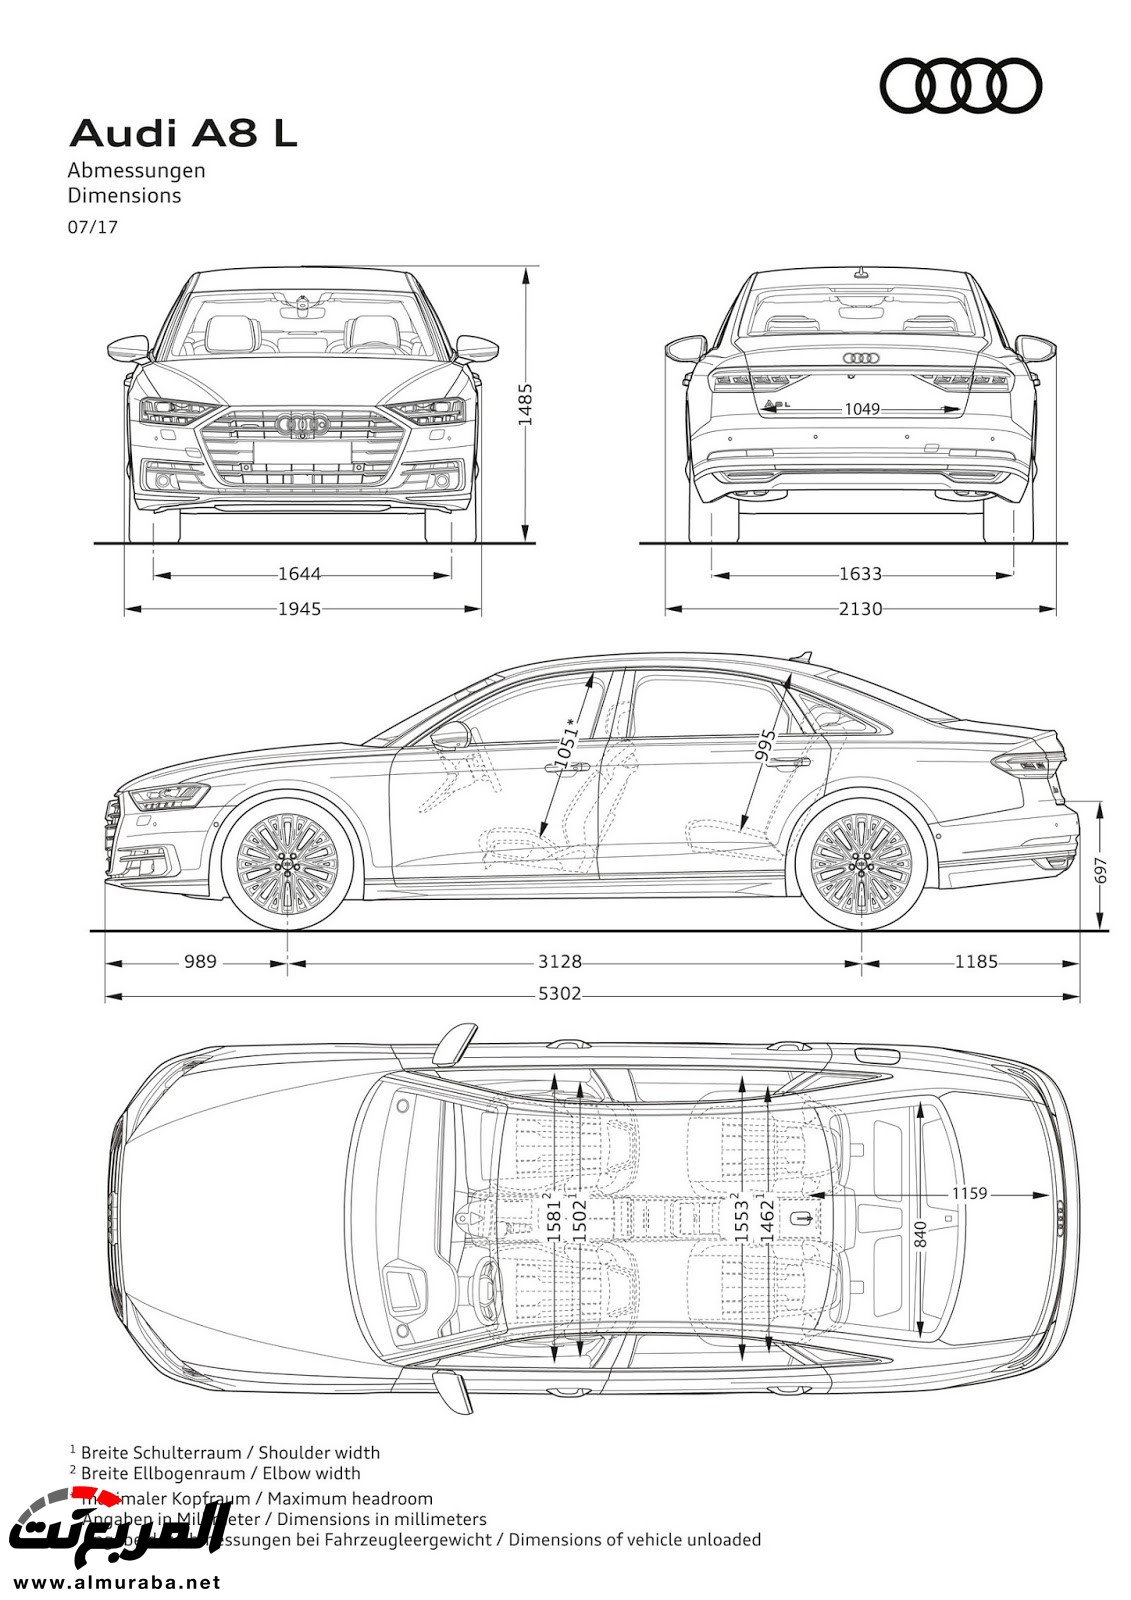 أودي A8 2018 الجديدة كلياً تكشف نفسها بتصميم وتقنيات متطورة "معلومات + 100 صورة" Audi A8 108